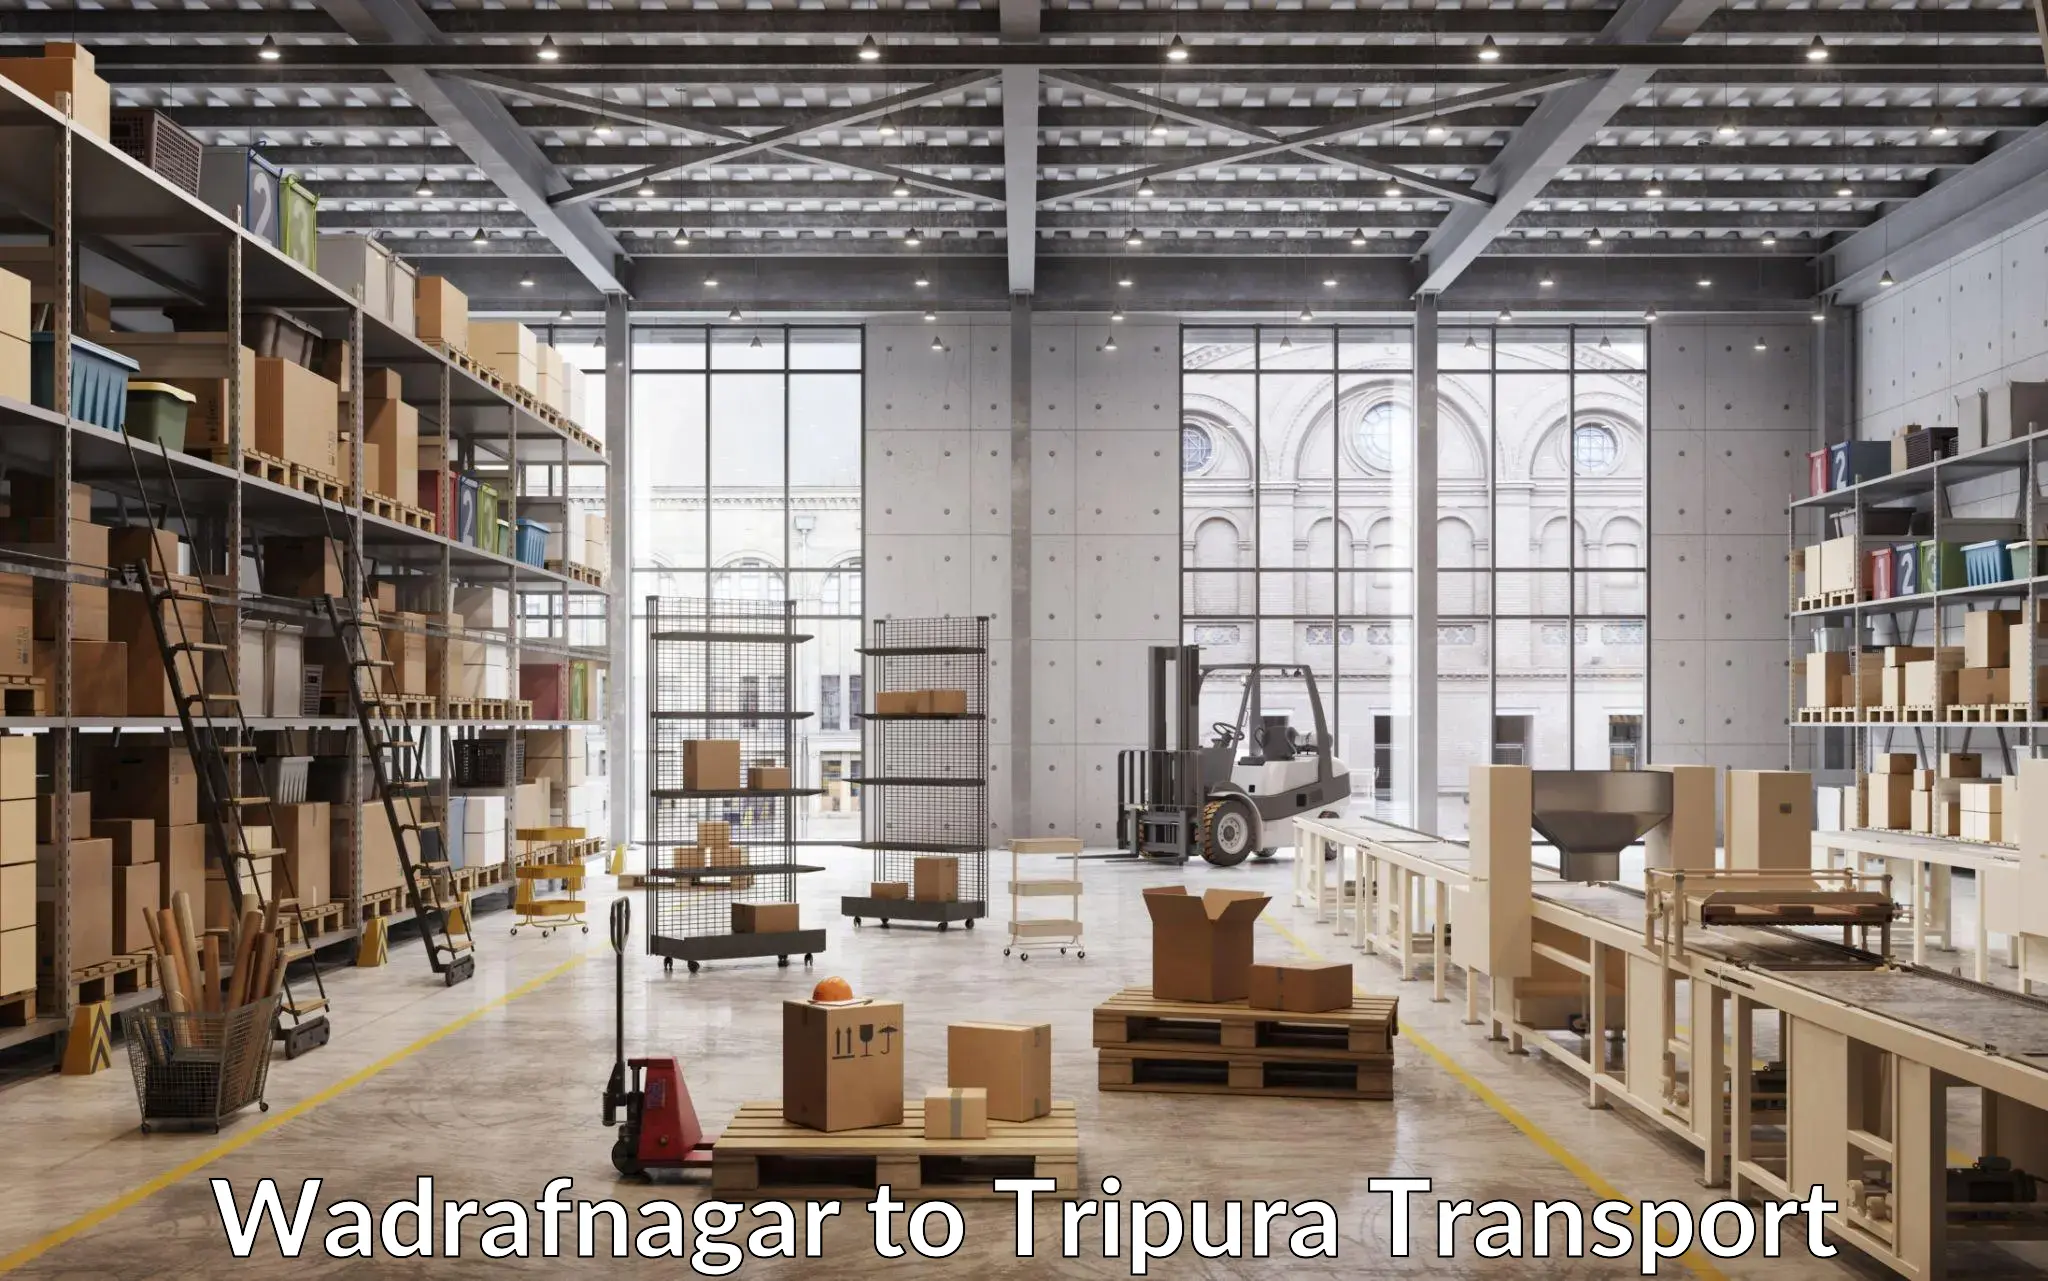 Transportation solution services Wadrafnagar to Manughat